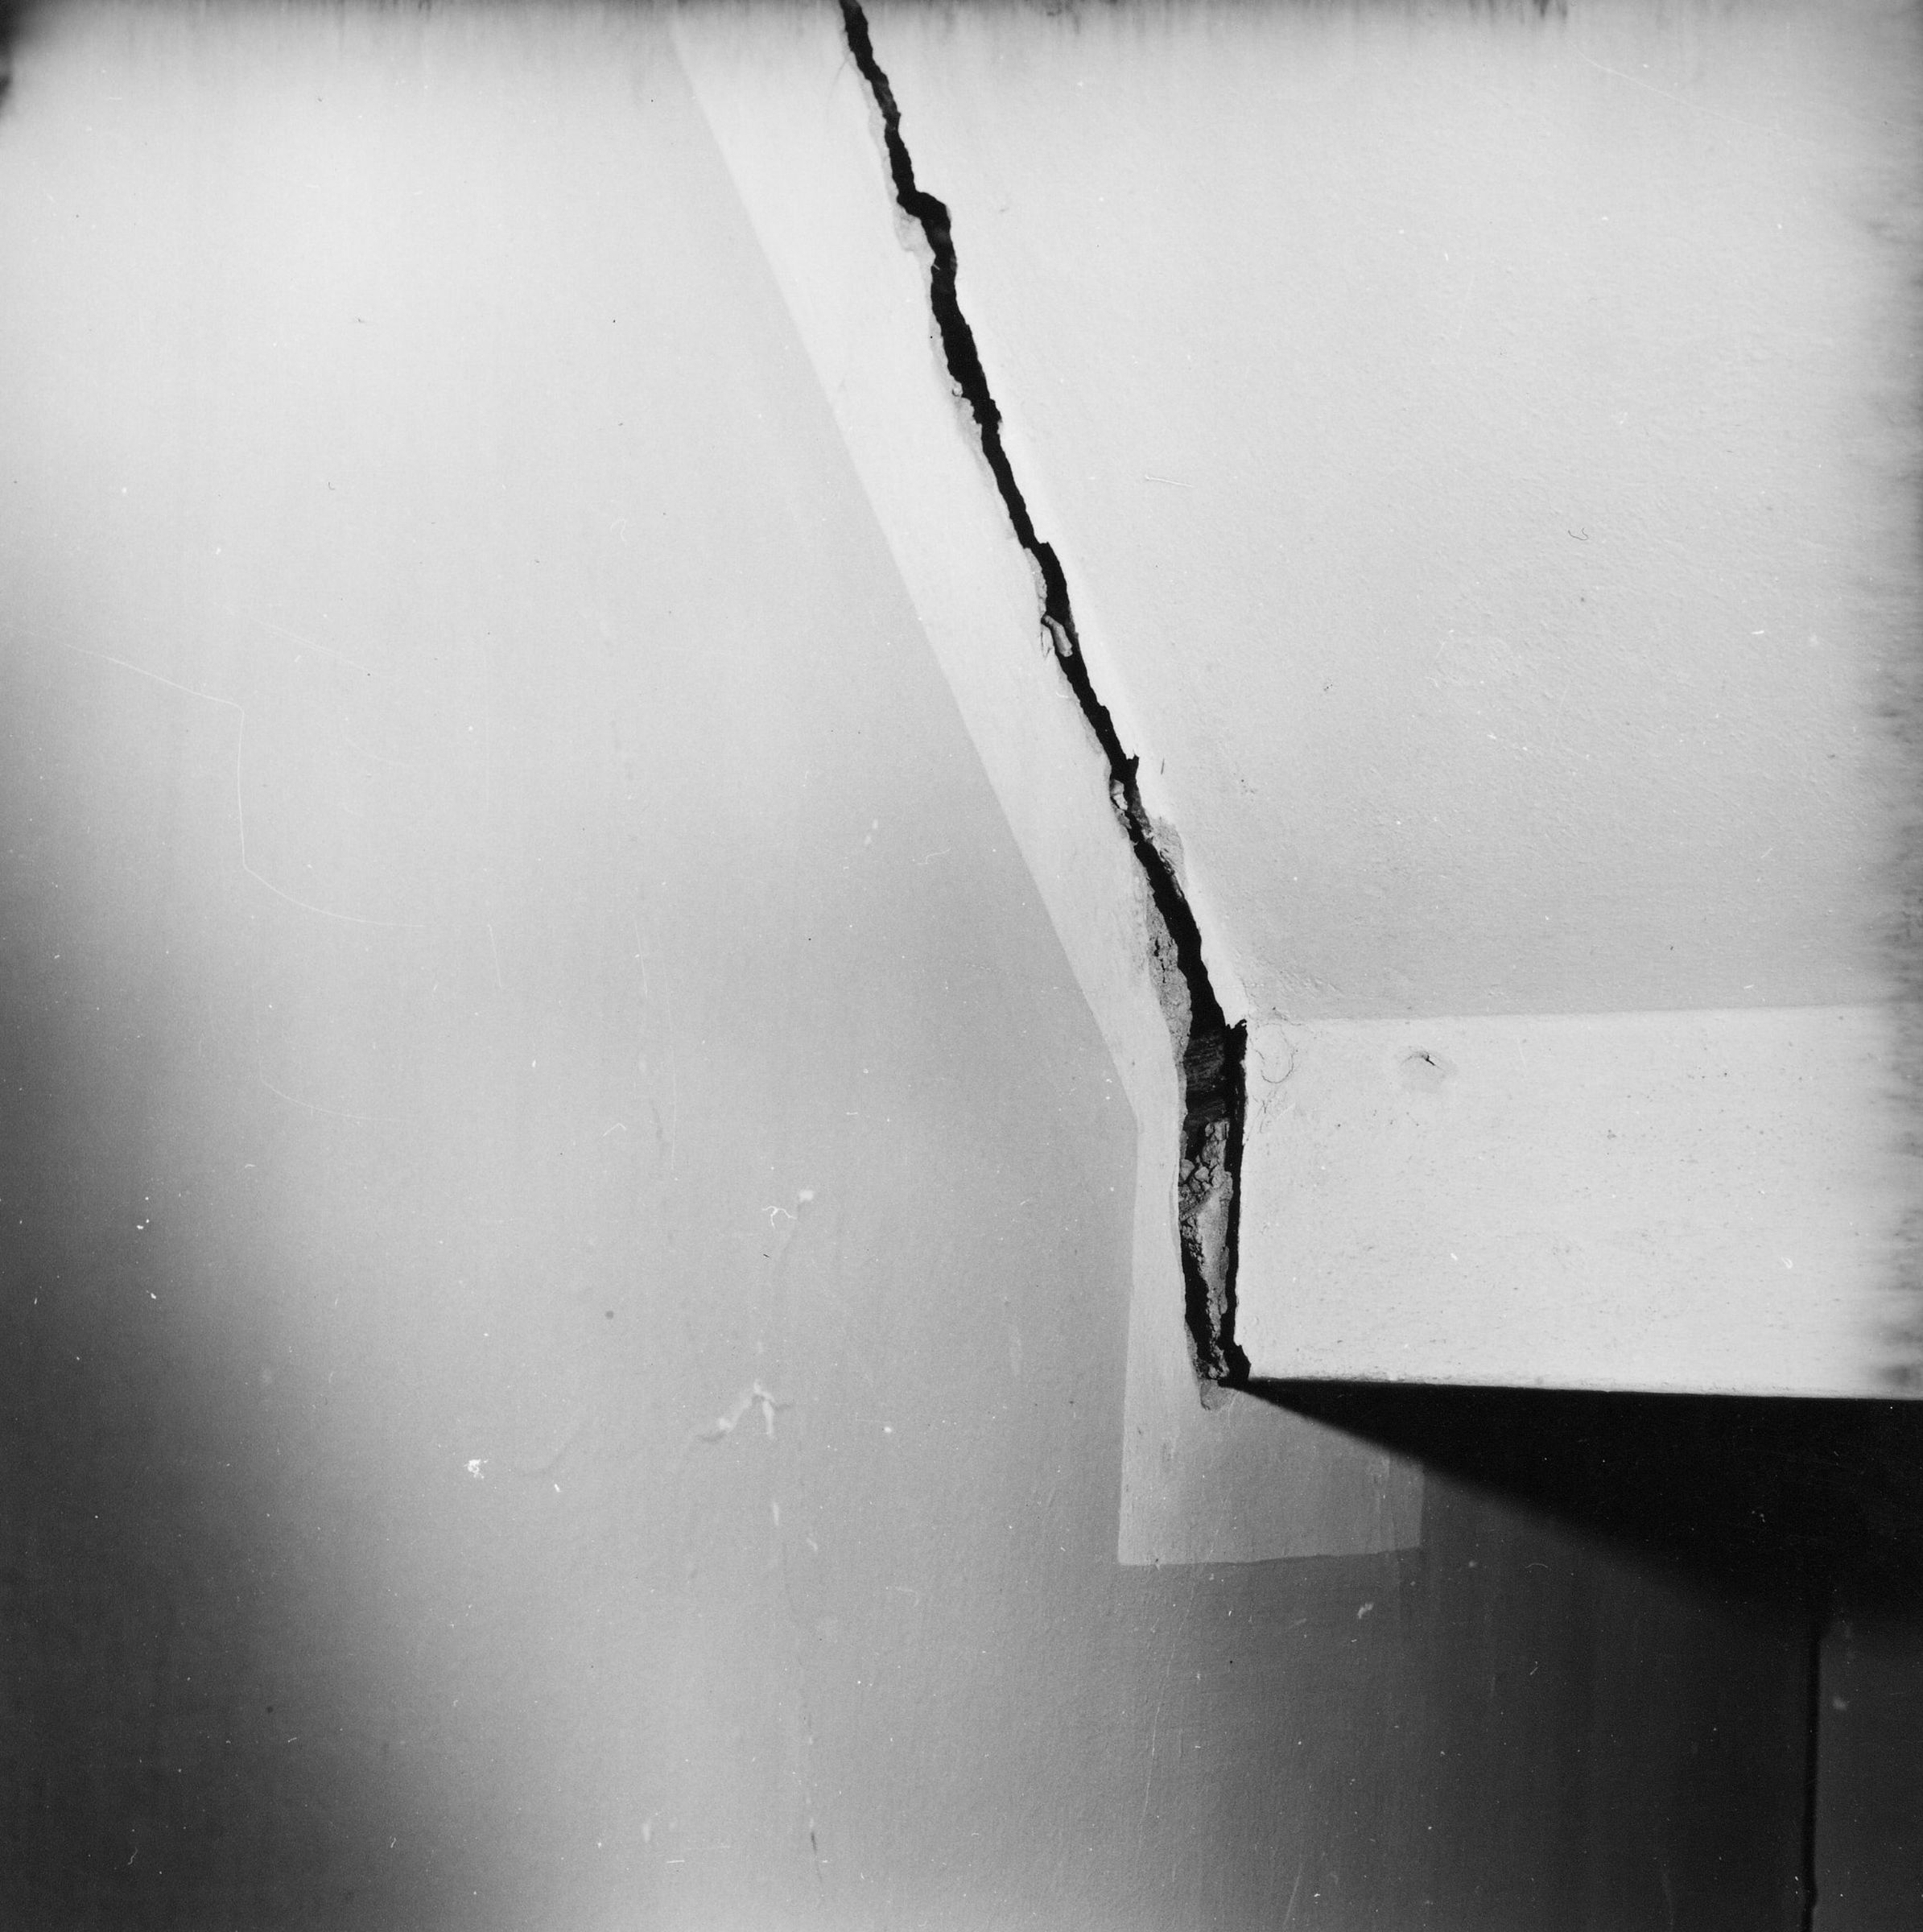 Fotografo non identificato, San Daniele del Friuli - Terremoto, contesto edilizio danneggiato, scala, vista di dettaglio, interno, 1976, gelatina ai sali d'argento/pellicola (acetati), 6x6cm, N030234